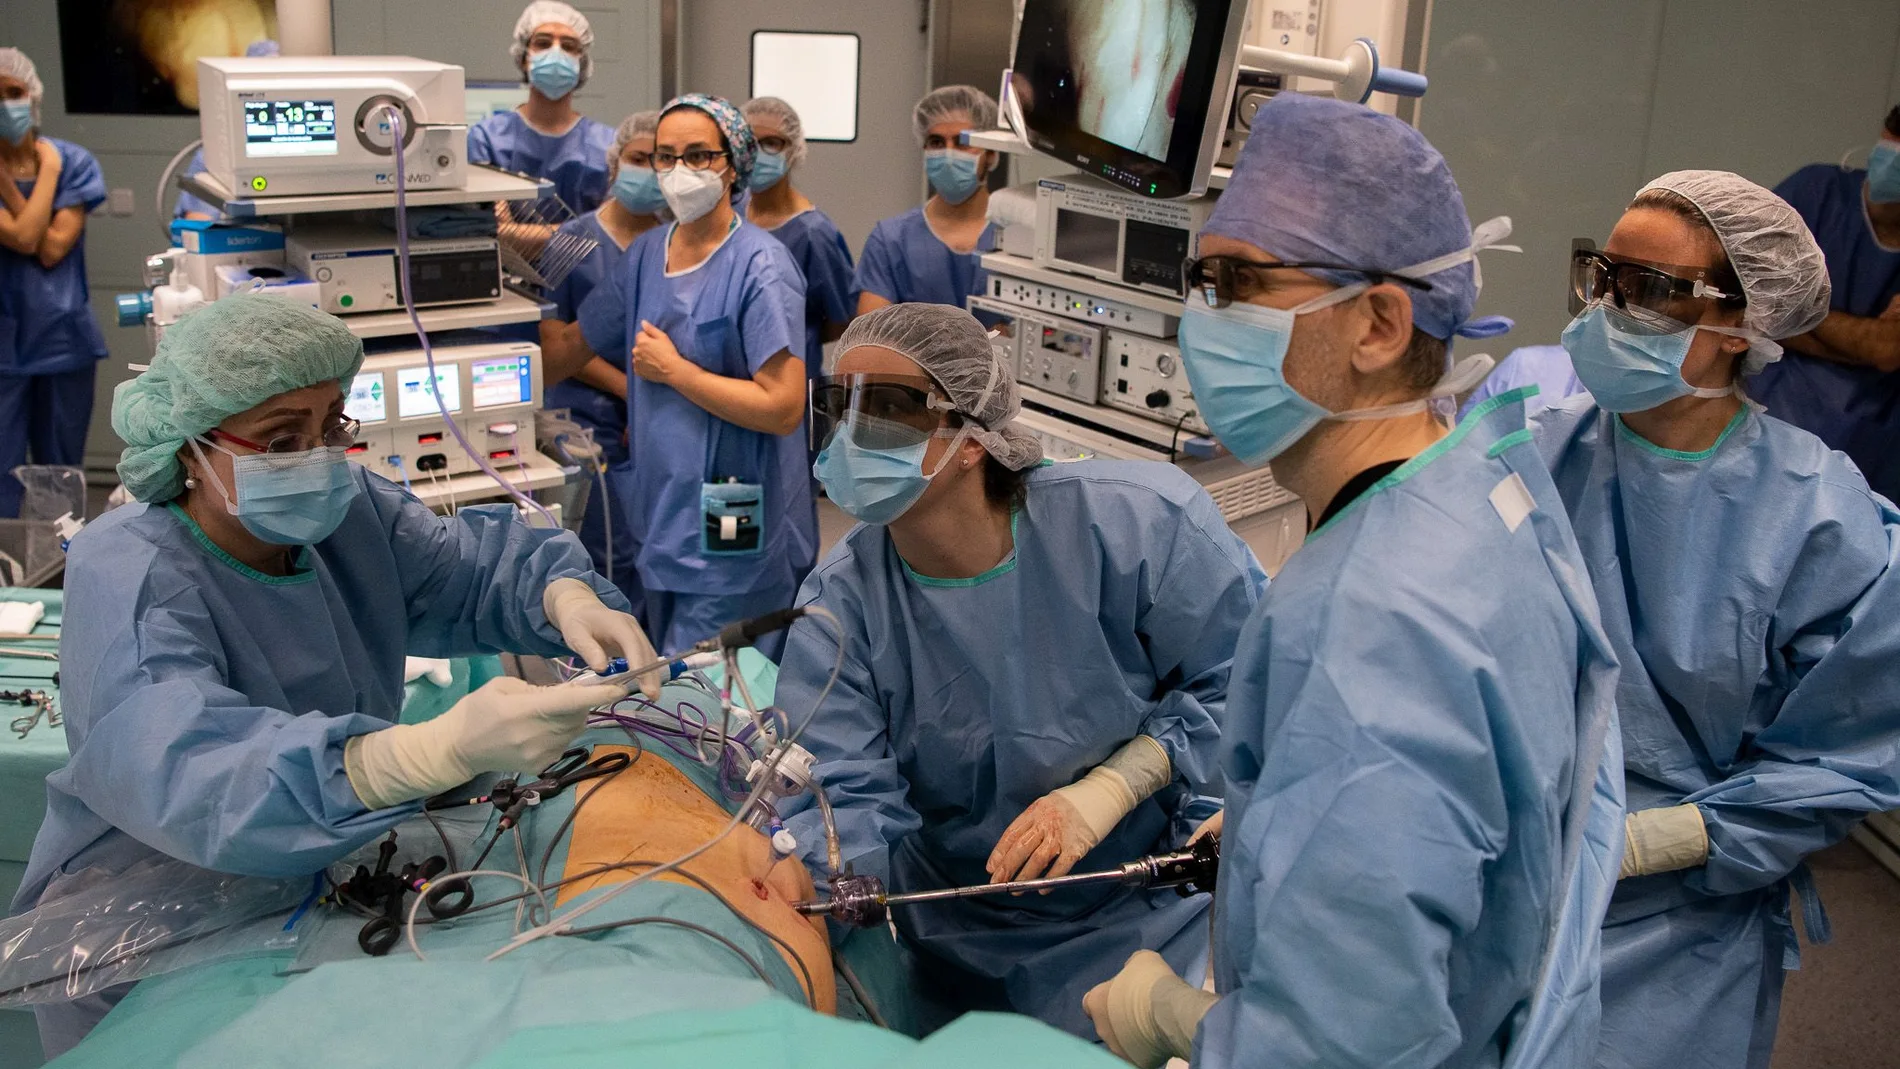 La técnica de la laparoscopia ha permitido aumentar el número de trasplantes renales de vivo en los últimos 15 años